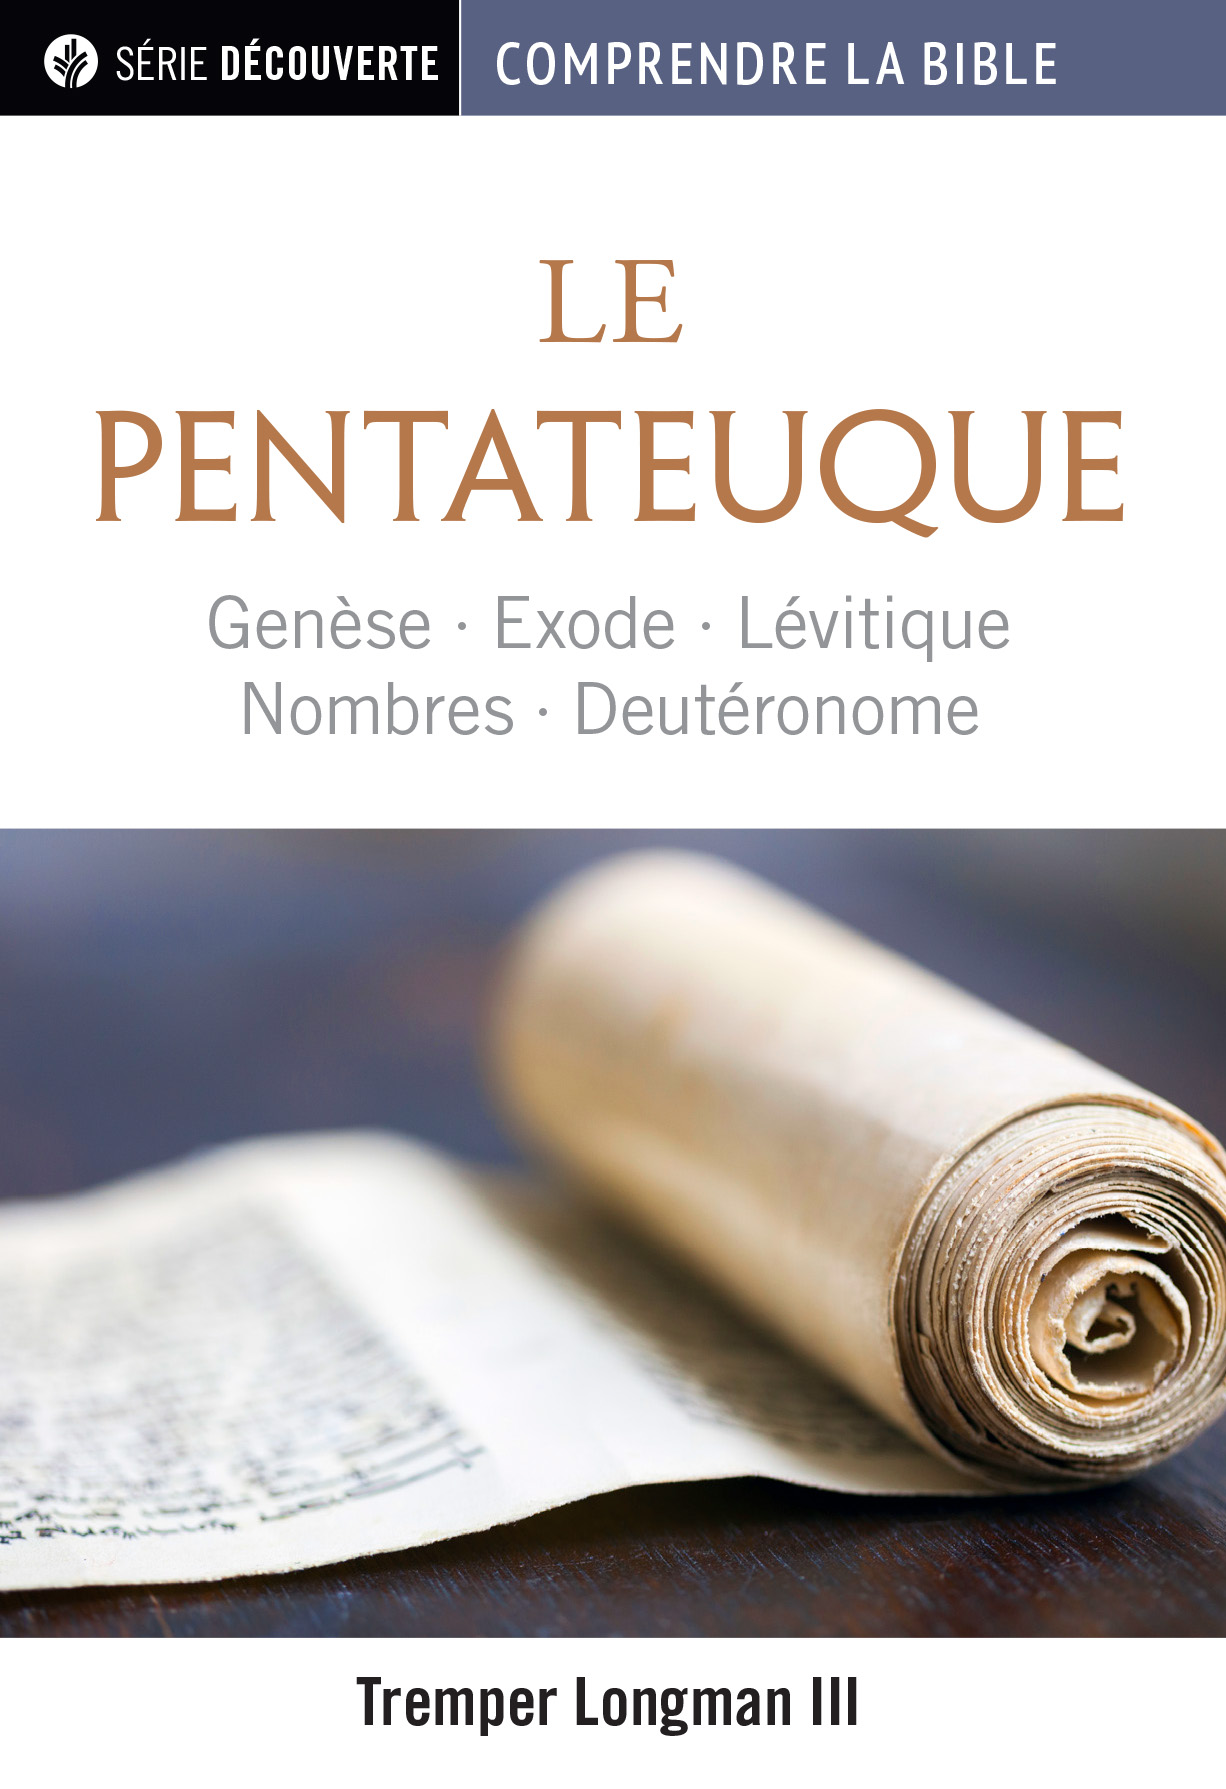 Pentateuque (Le) - Genèse, Exode, Lévitique, Nombres et Deutéronome [brochure NPQ série découverte]